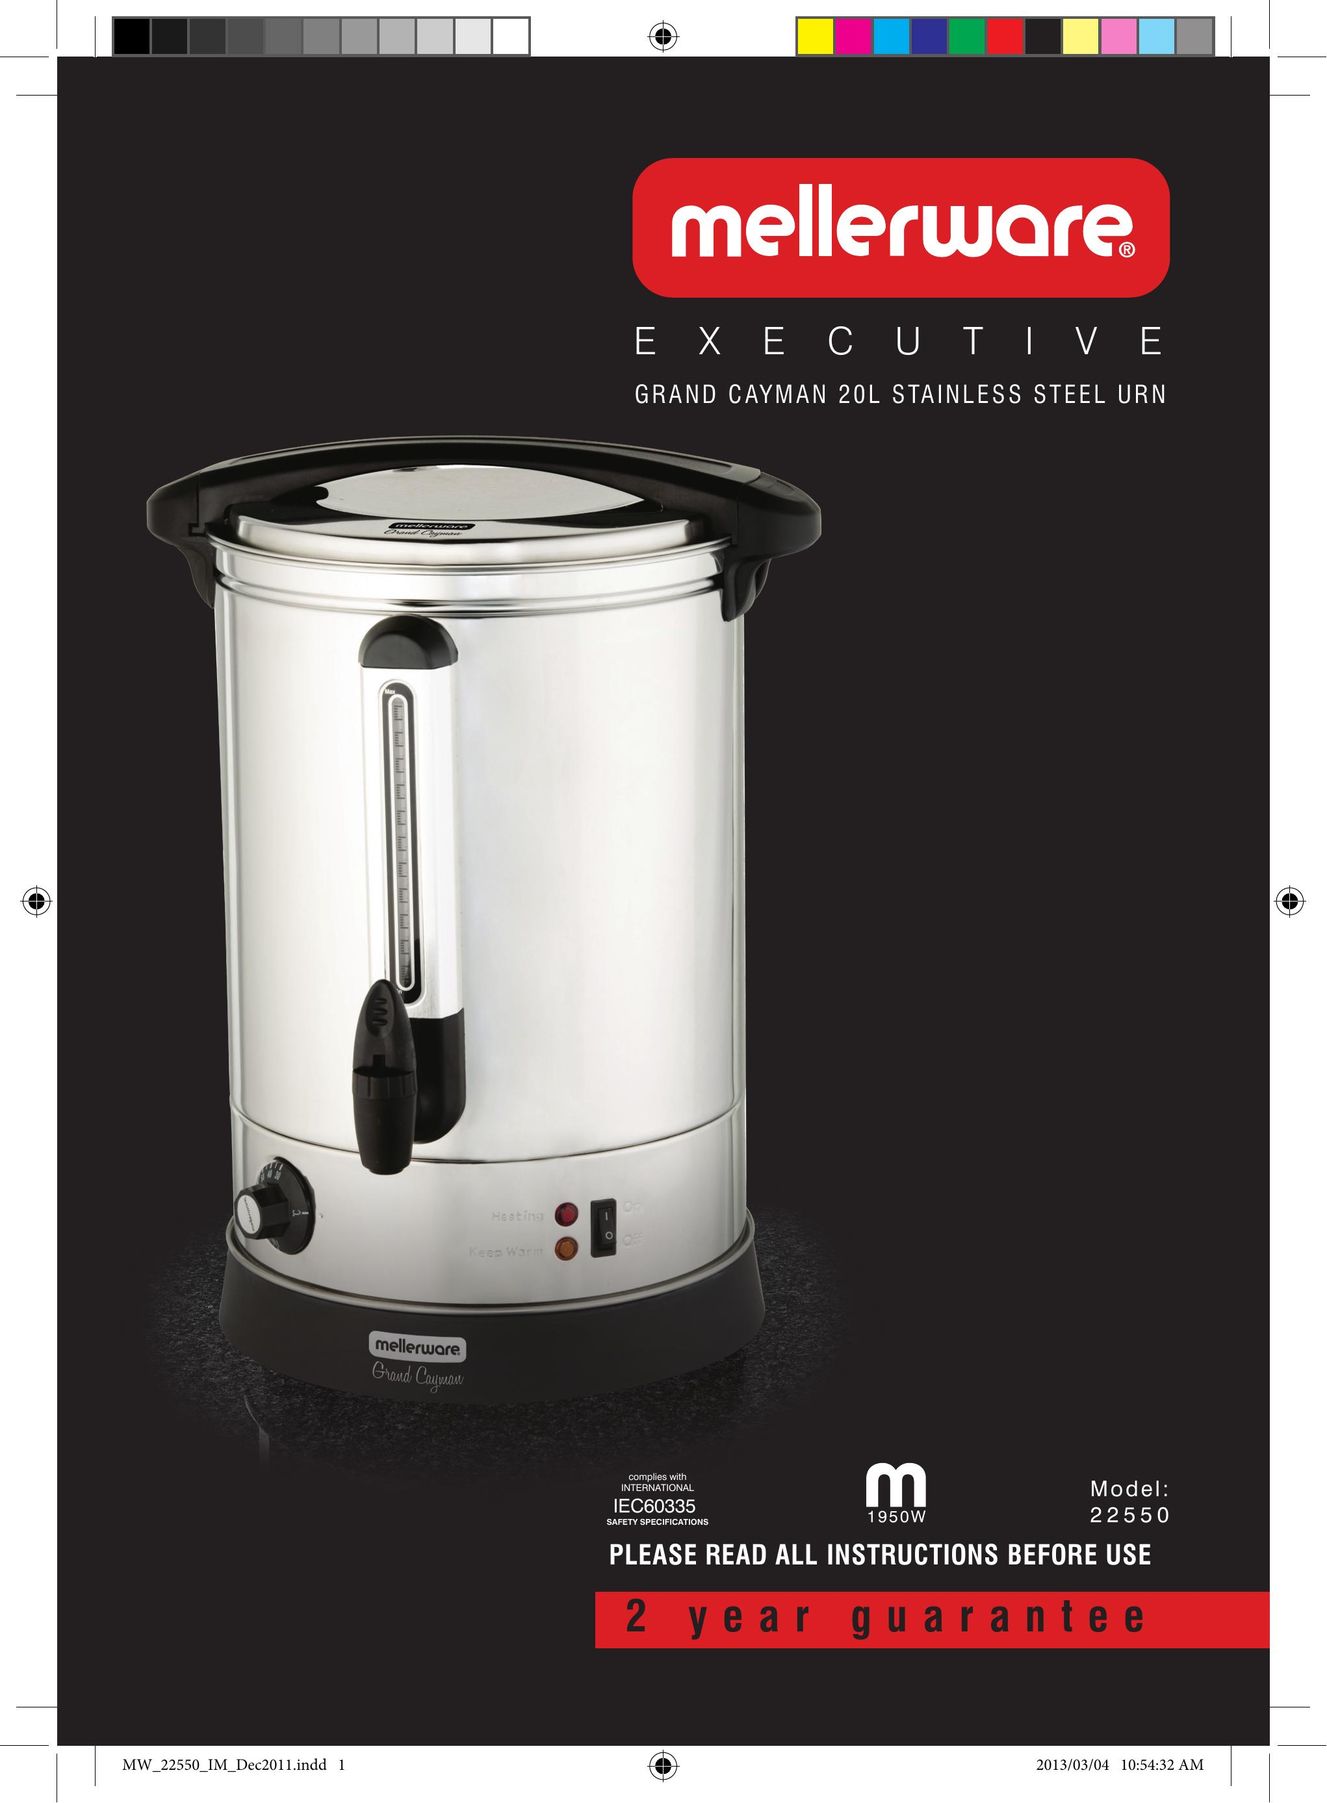 Mellerware 22550 Hot Beverage Maker User Manual